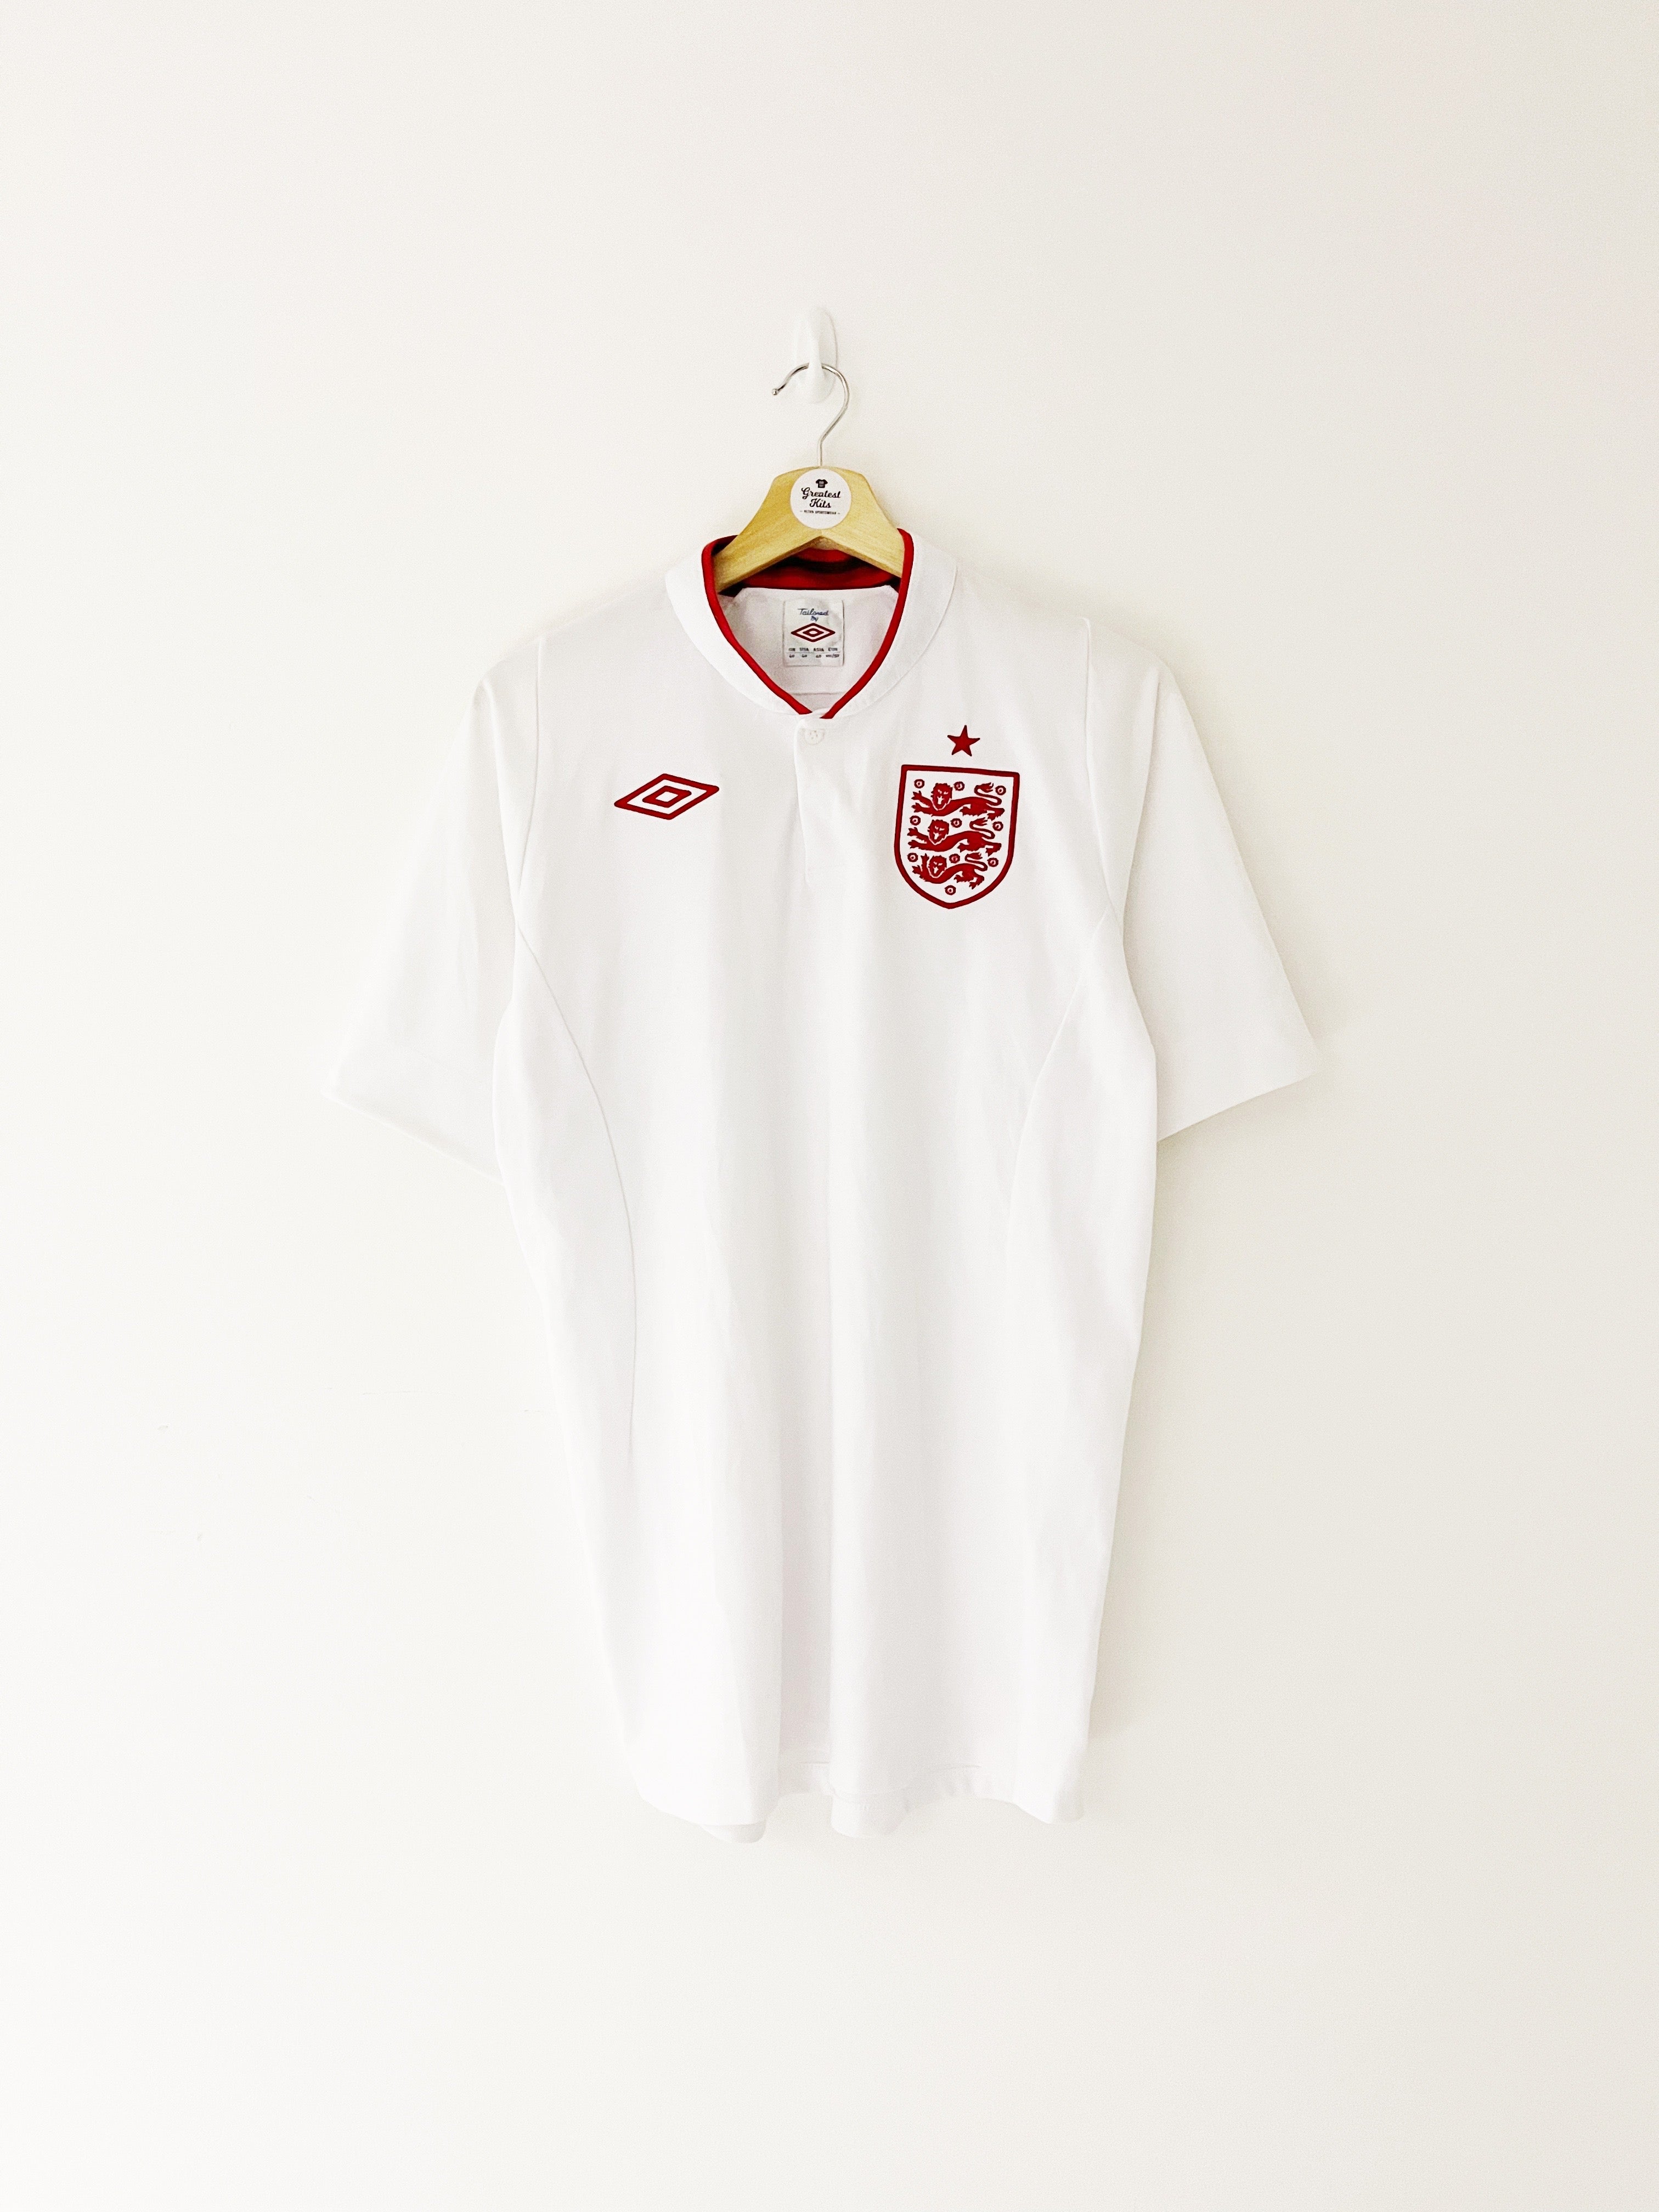 2012/13 England Home Shirt (L) 9/10